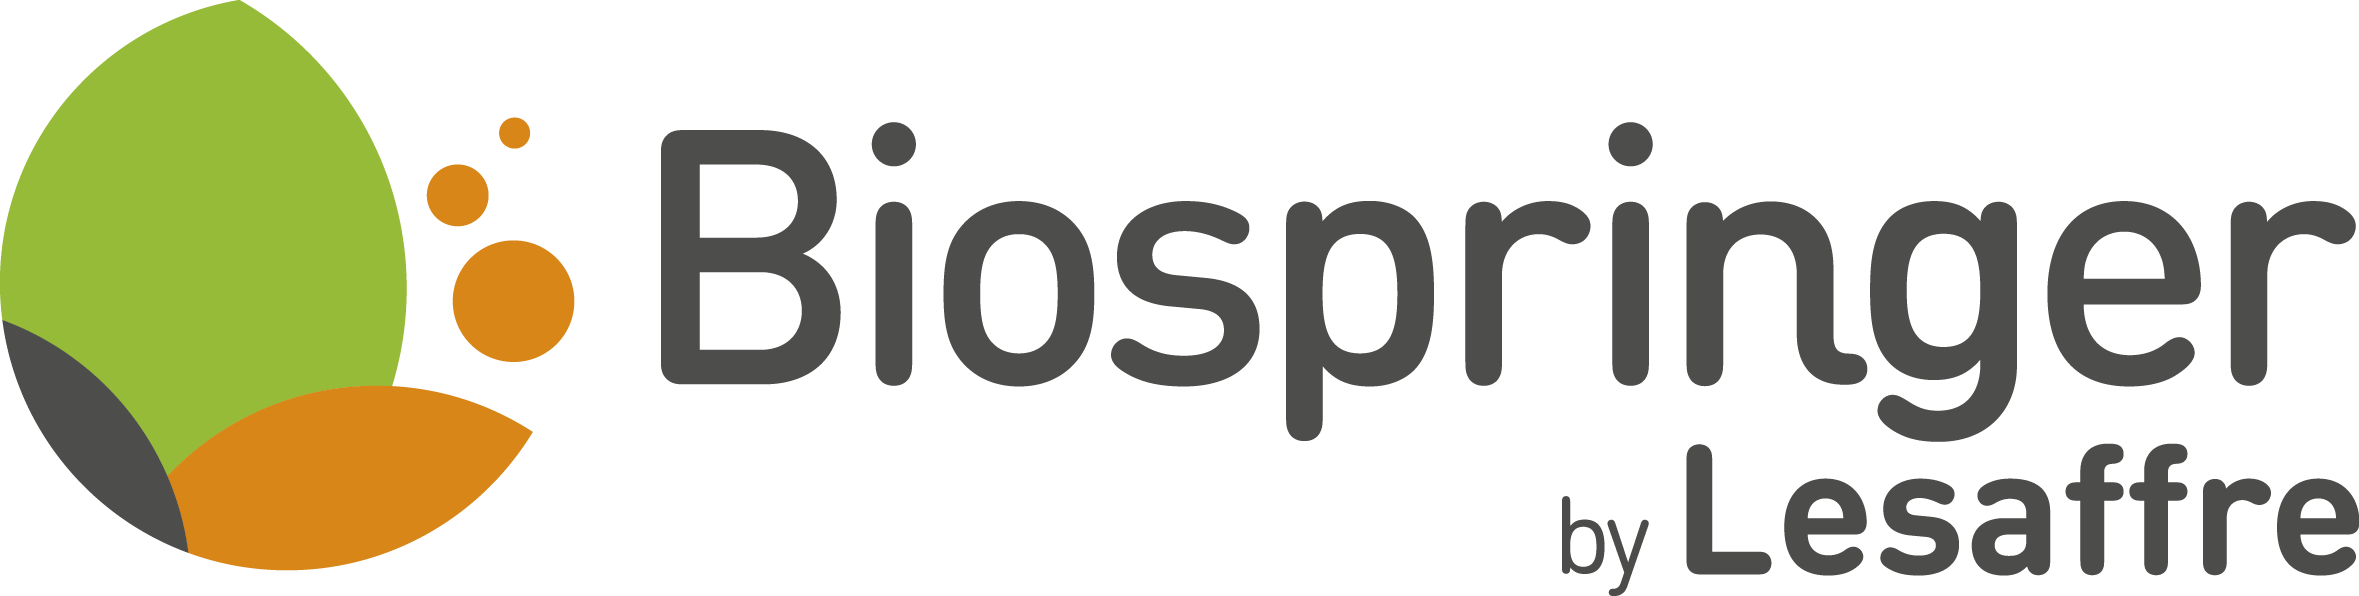 Biospringer_logo